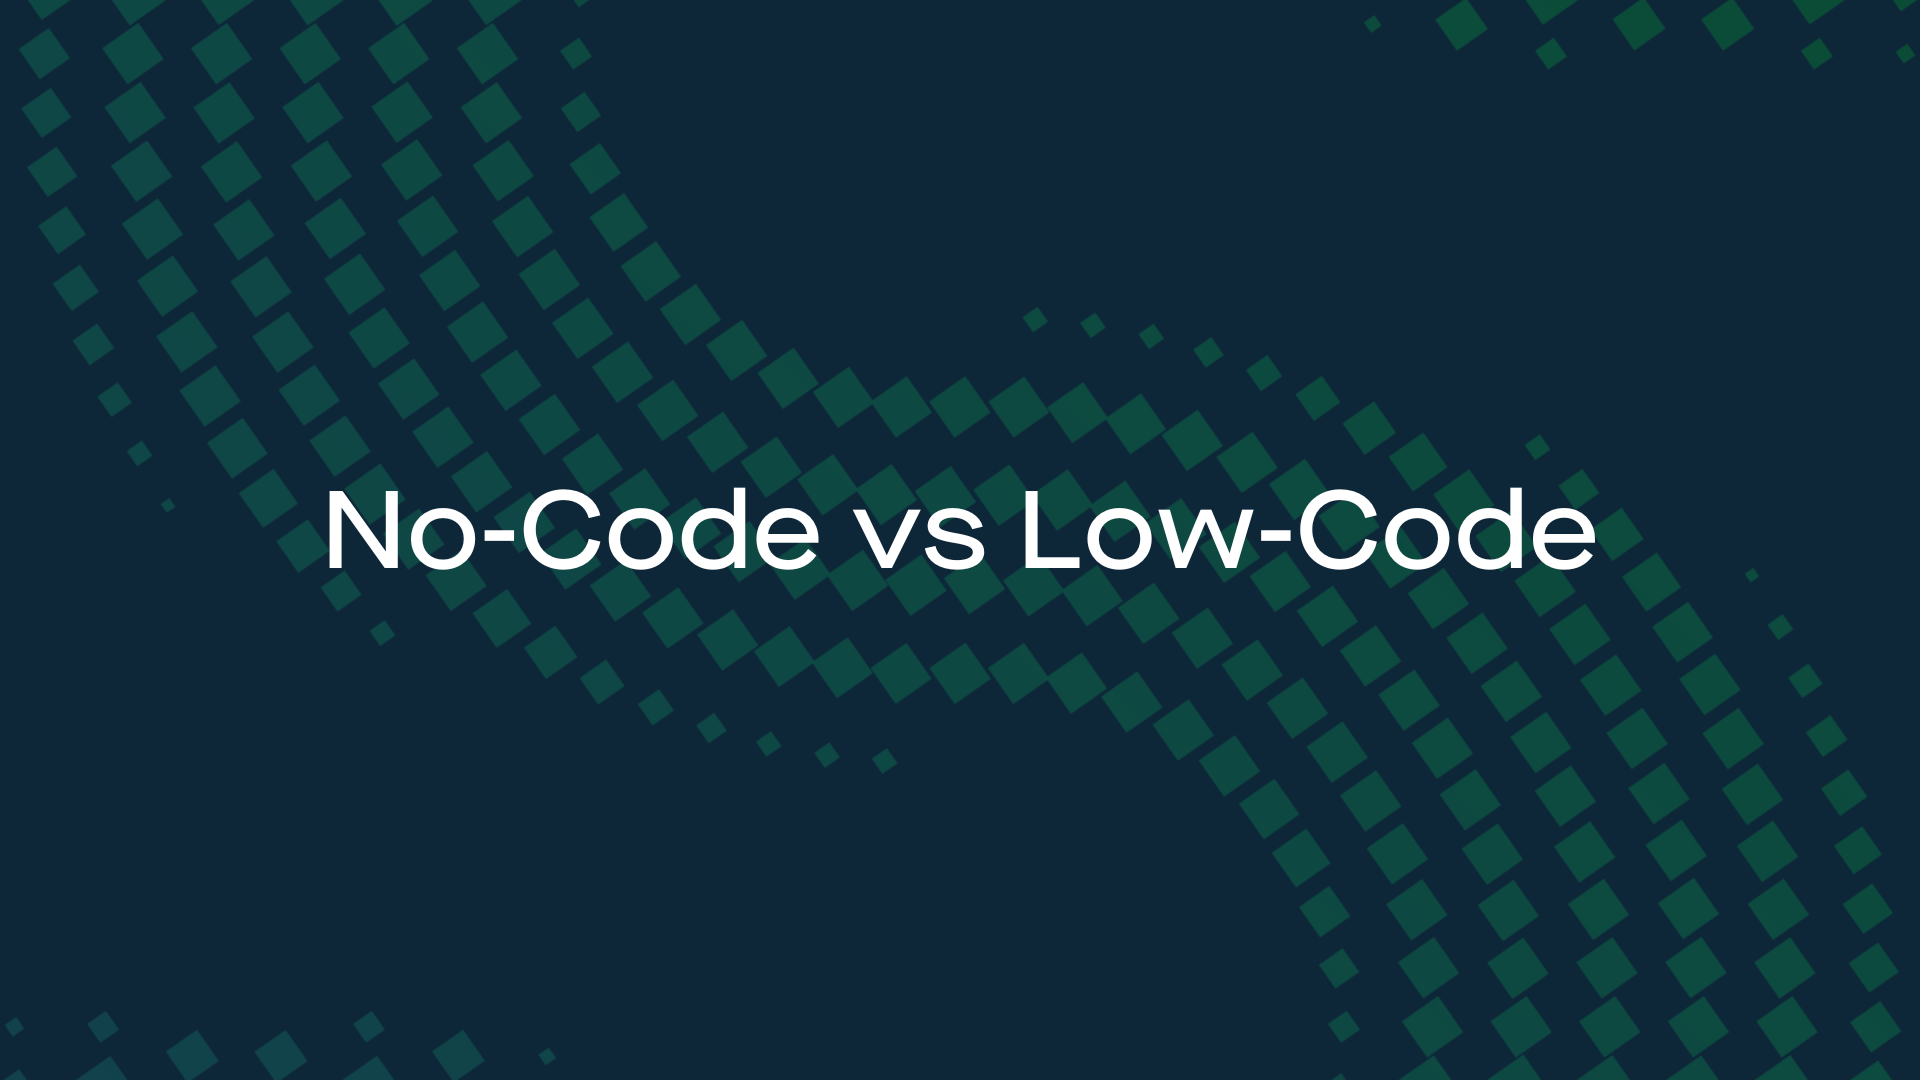 Low-Code vs No-Code